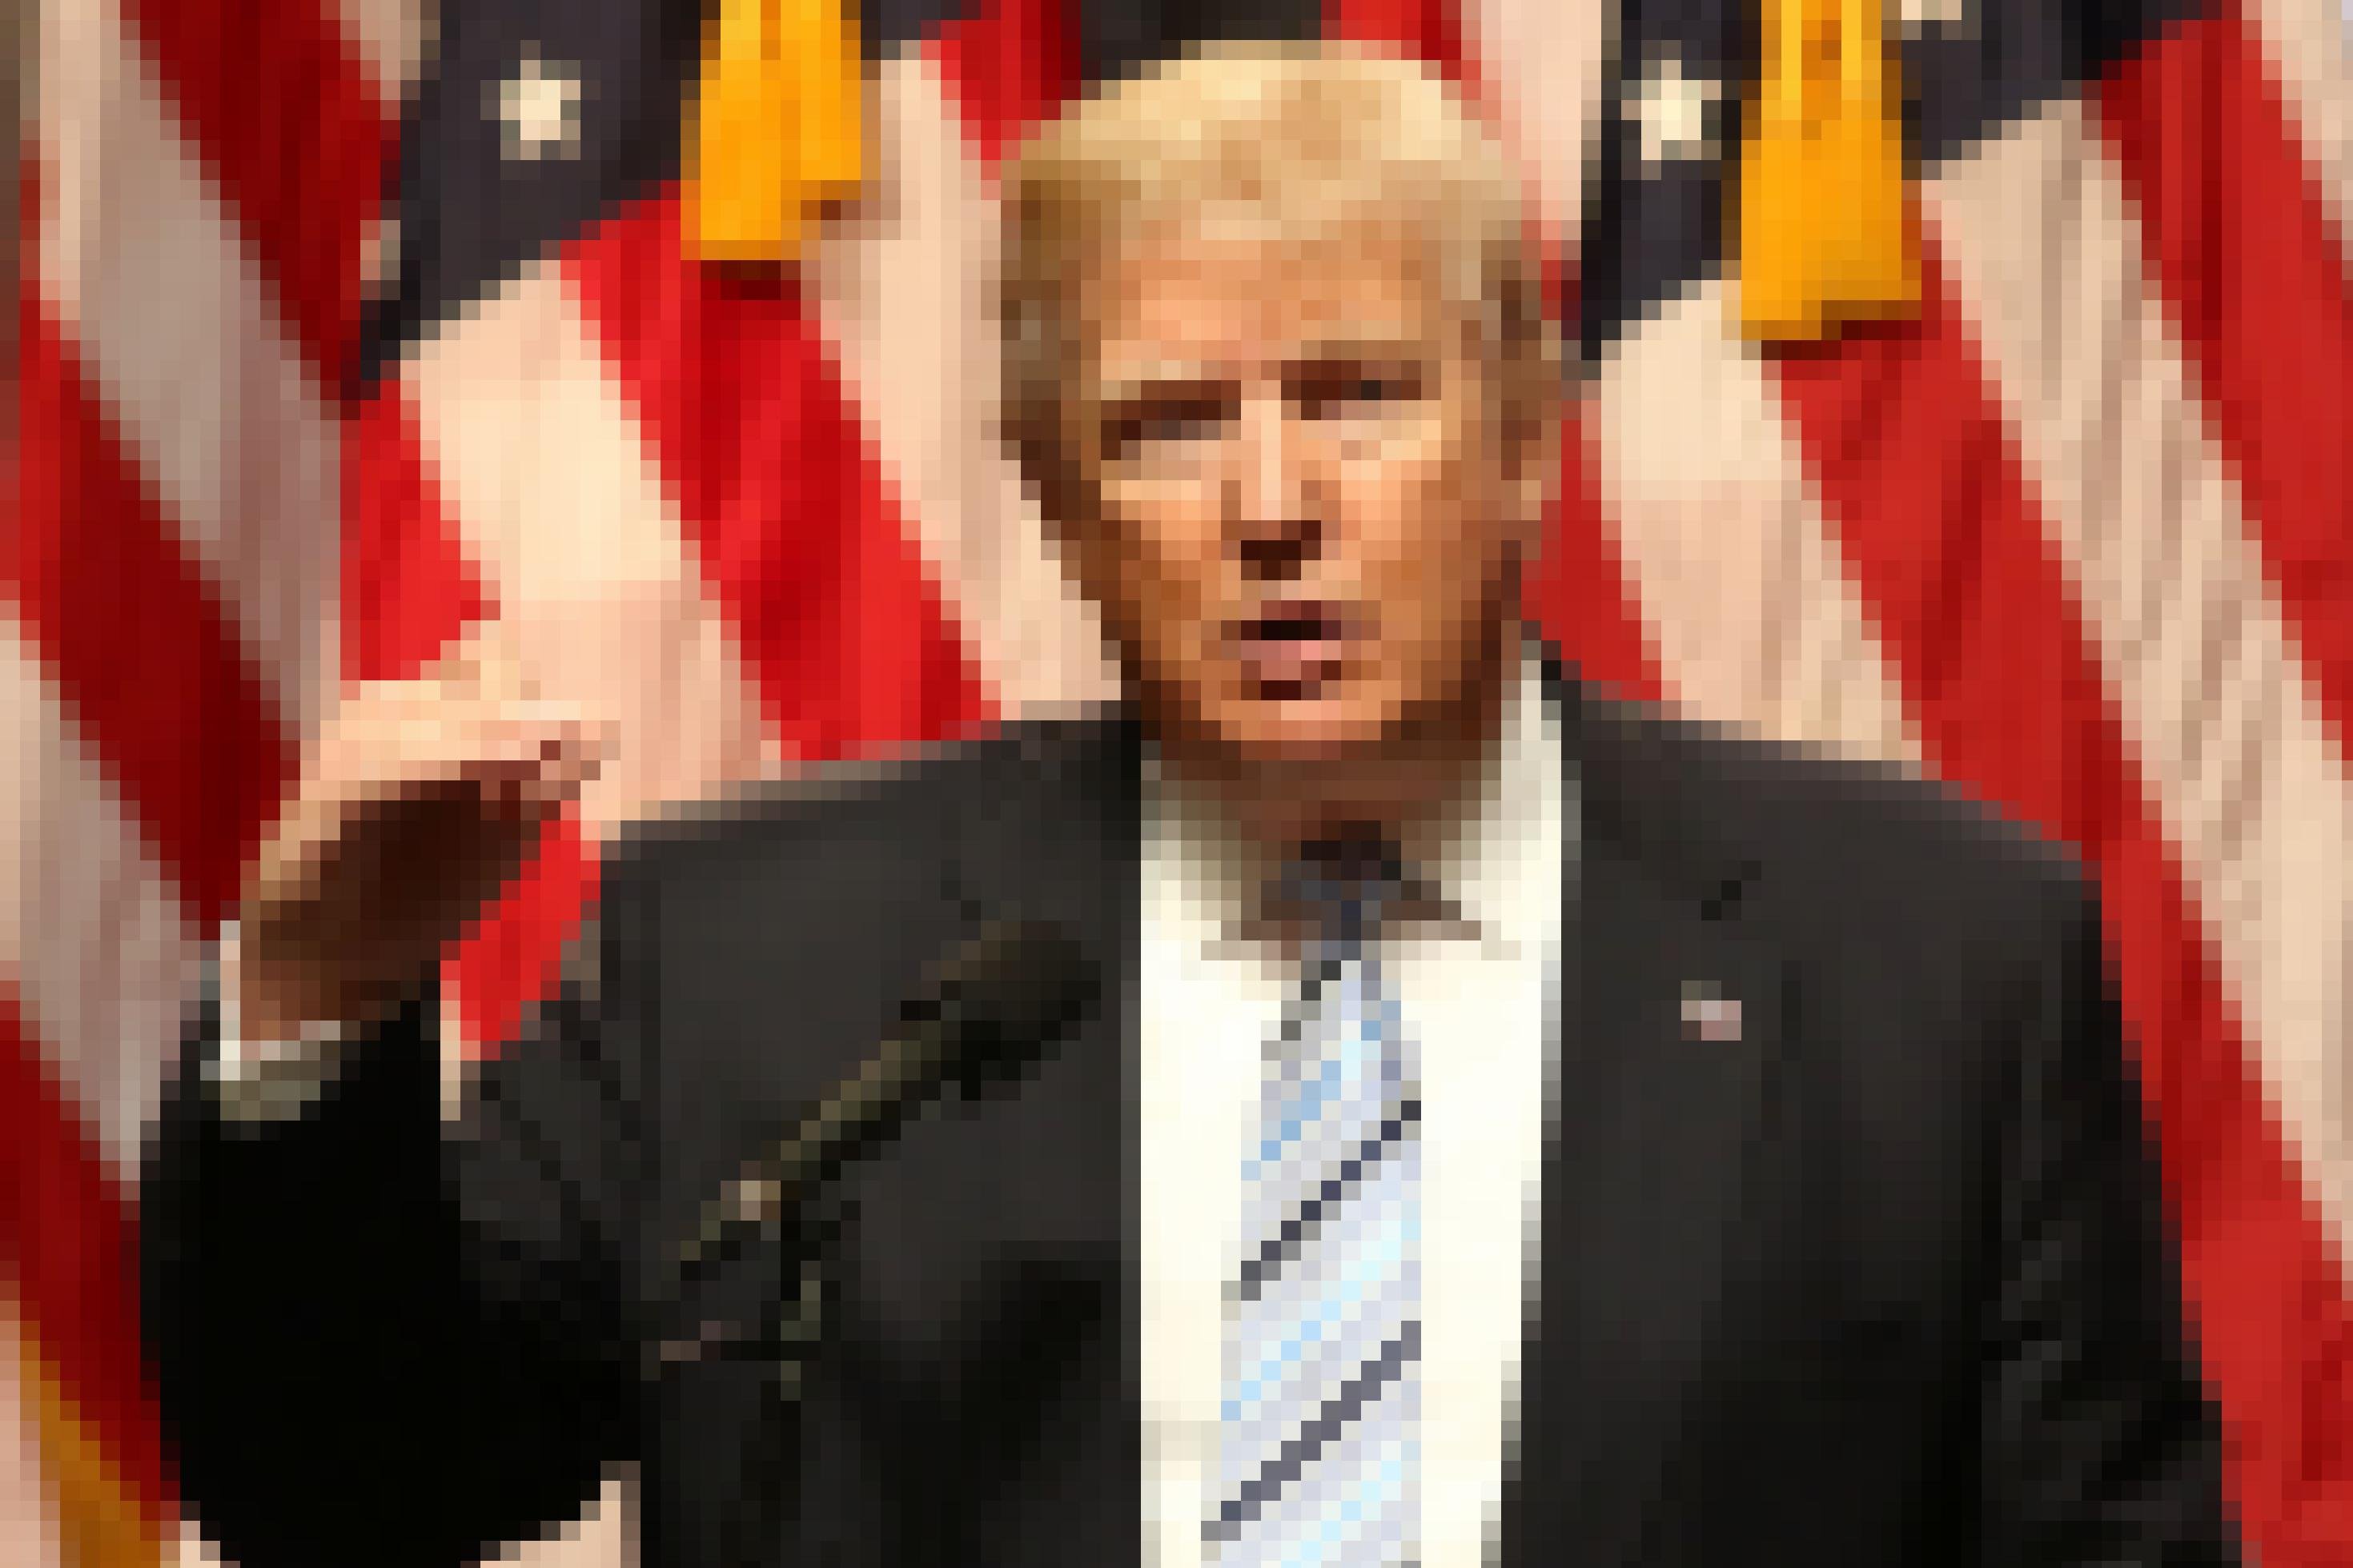 Der US-Präsident Donald Trump bei einer Rede, im Hintergrund die US-amerikanische Flagge.